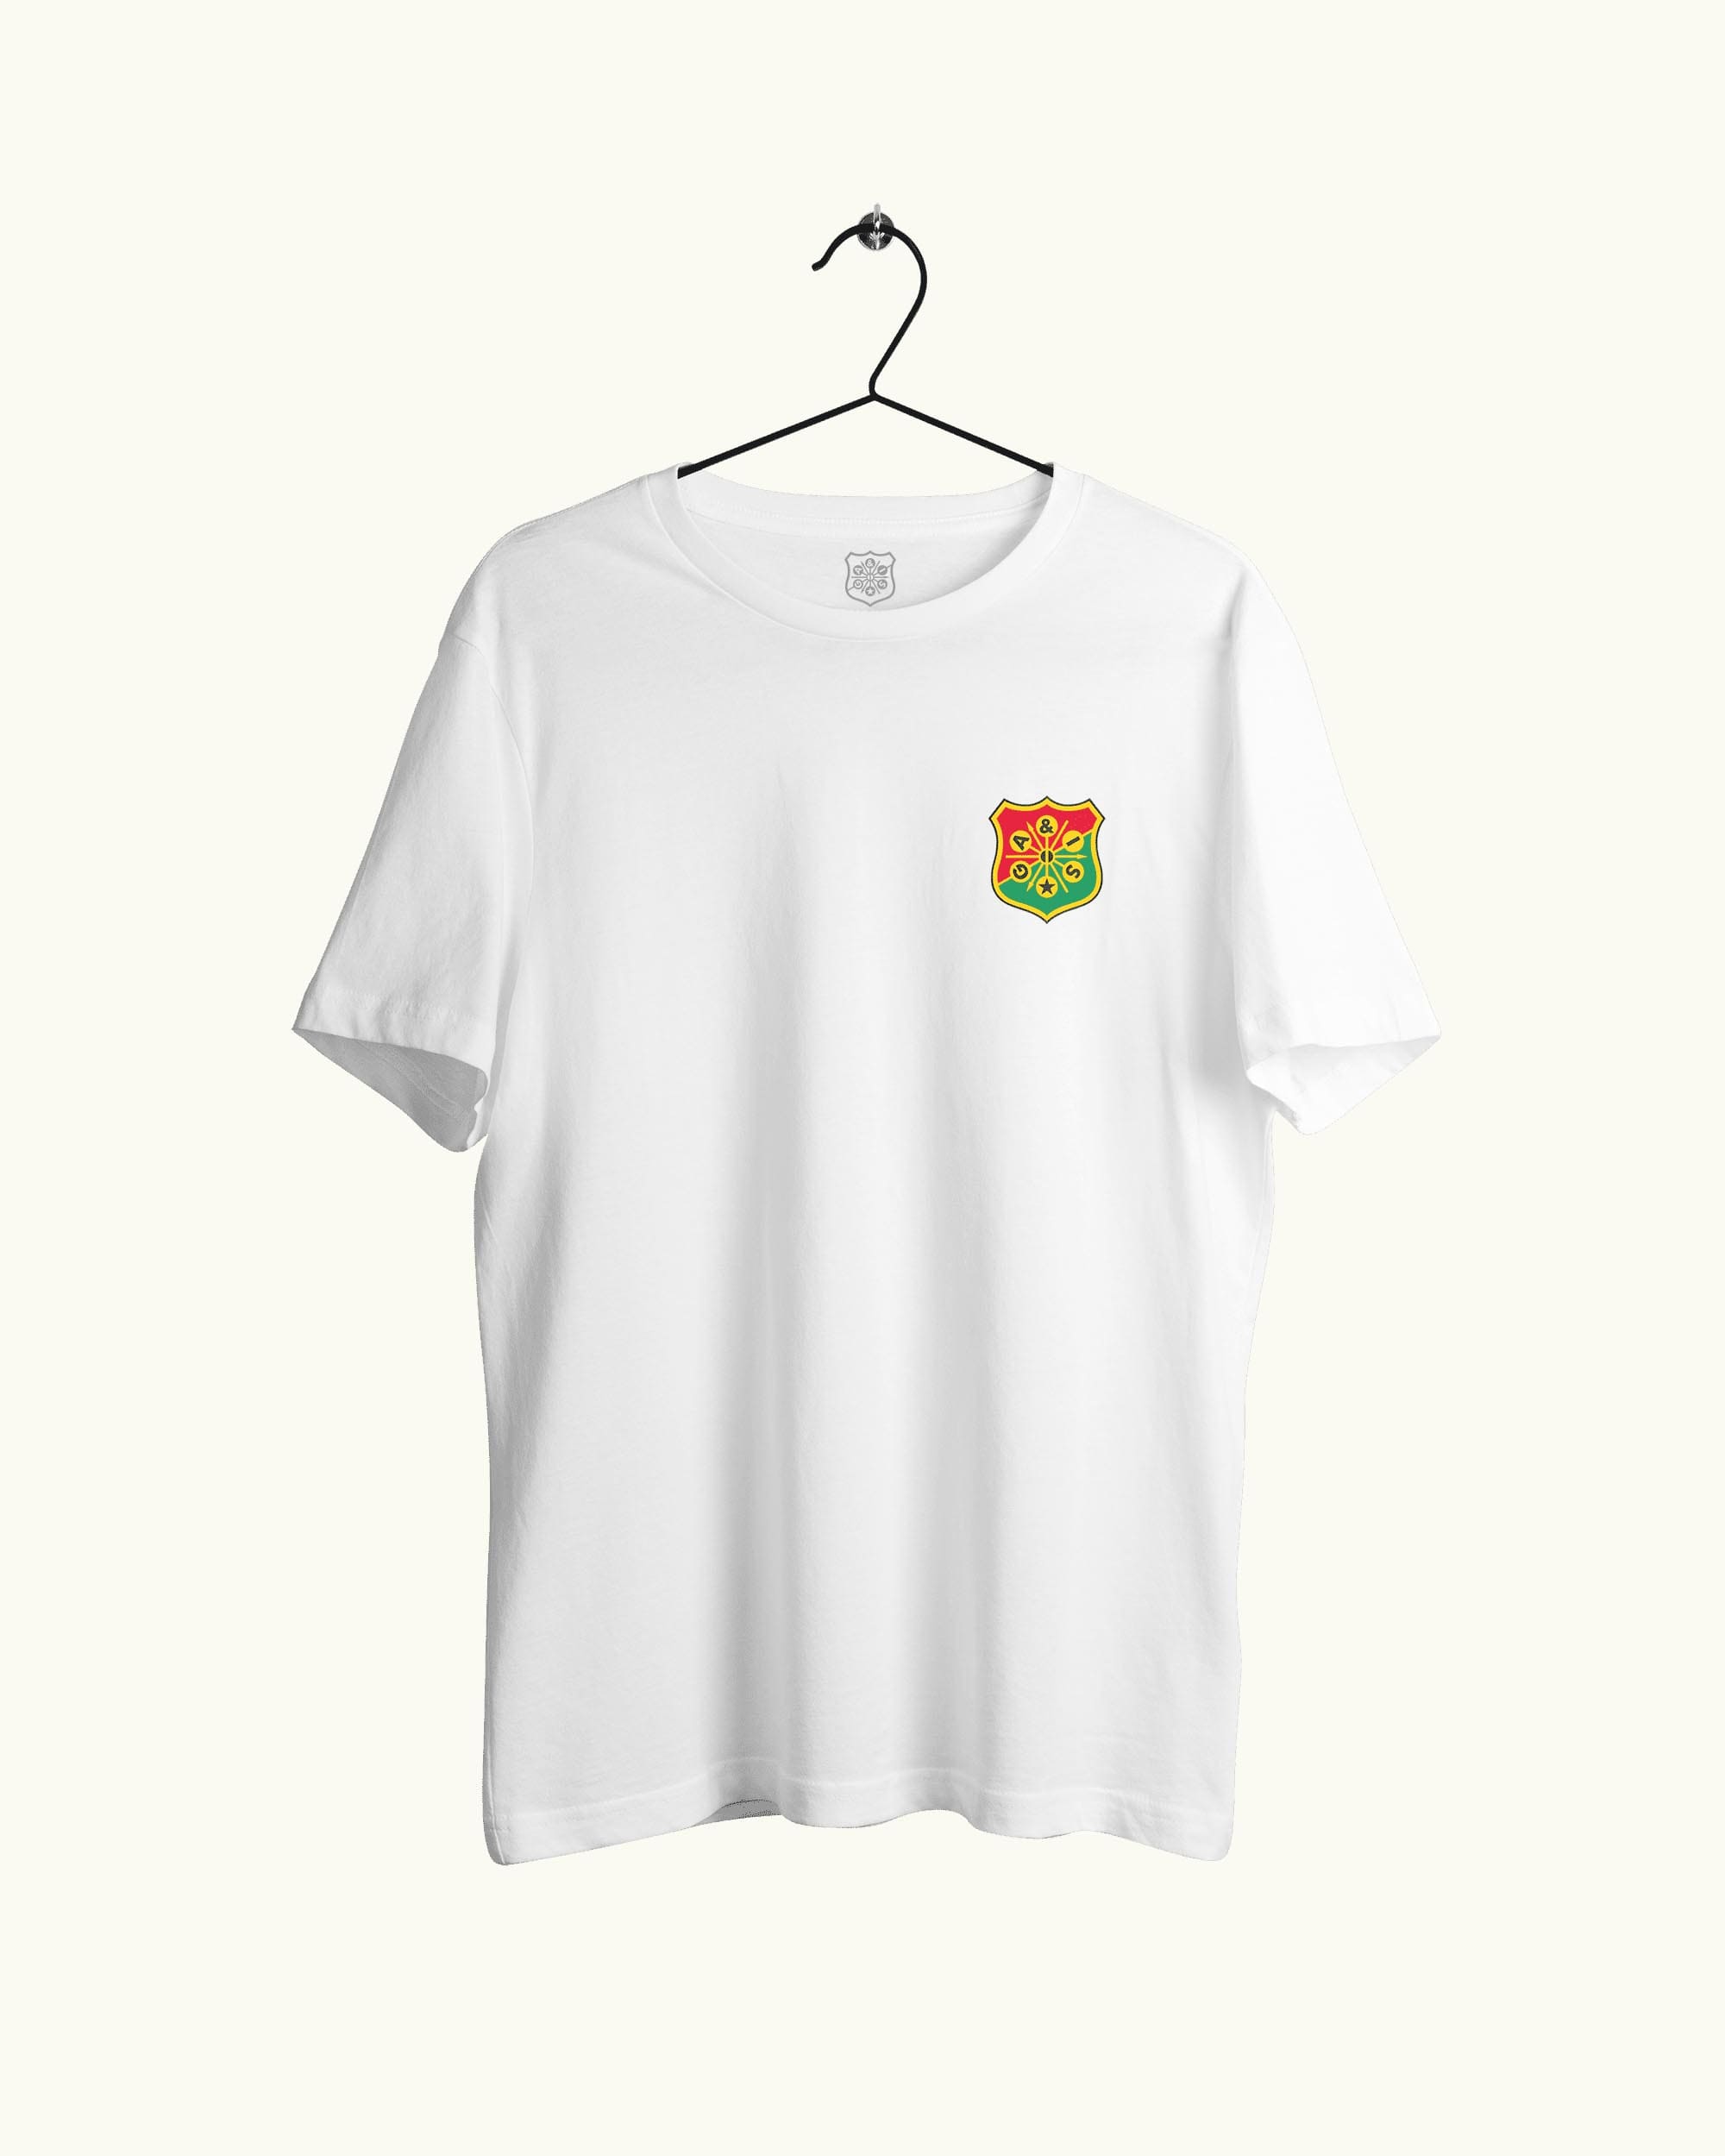 T-shirt Litet Klubbemblem Vit - GAIS Officiella Souvenirbutik